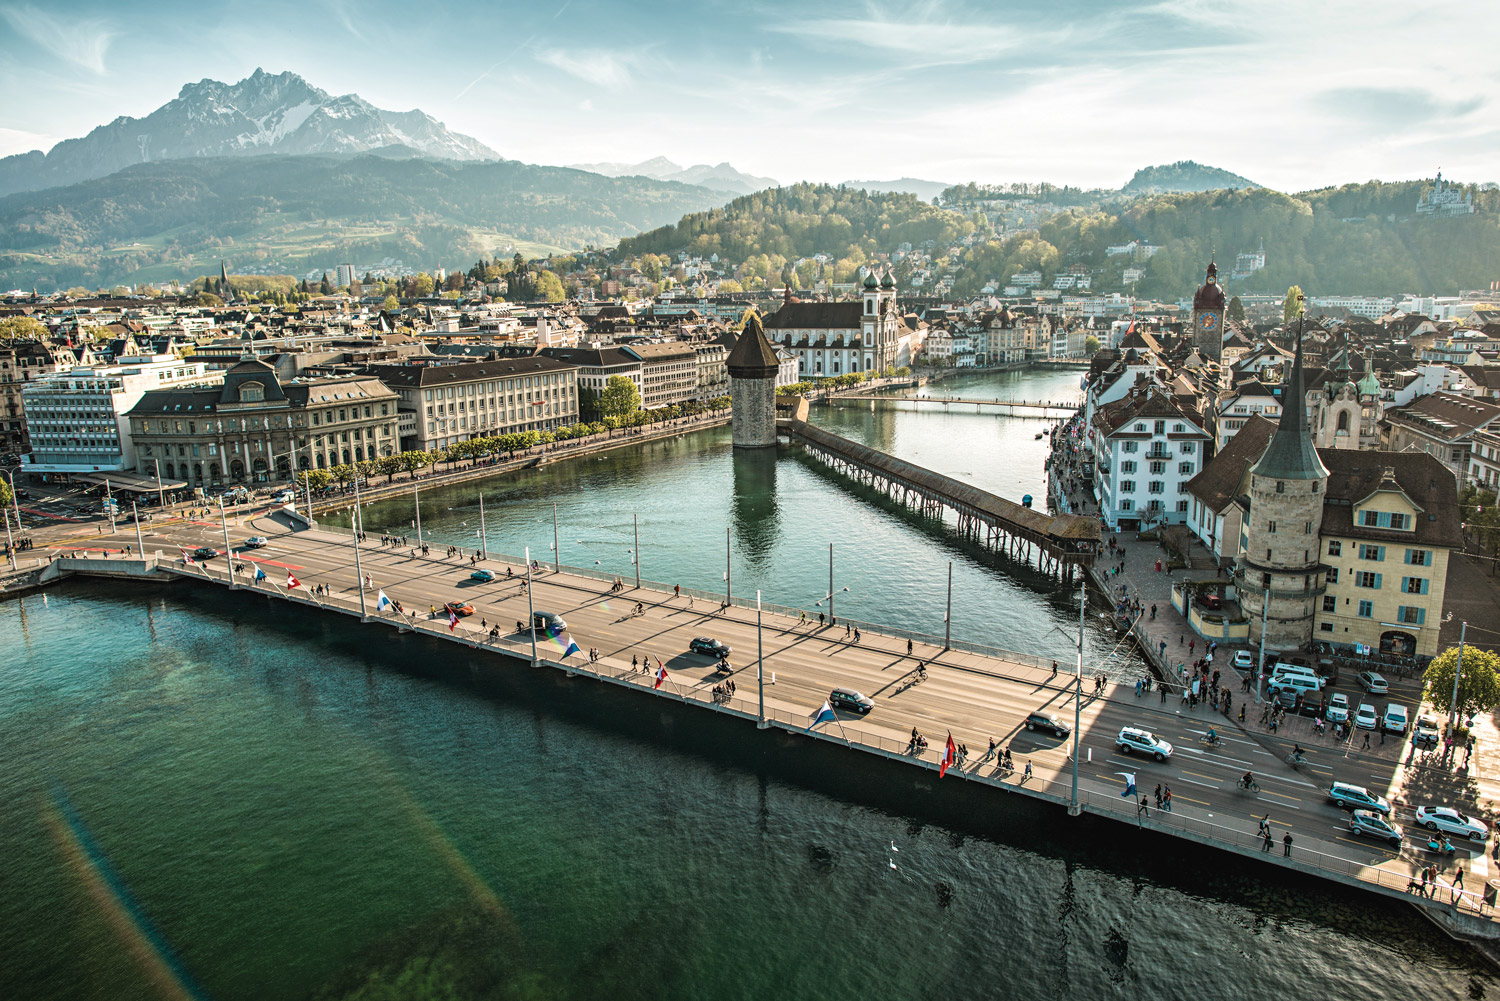 Lucerne, Switzerland: The Gold List 2022 - Best Destination International